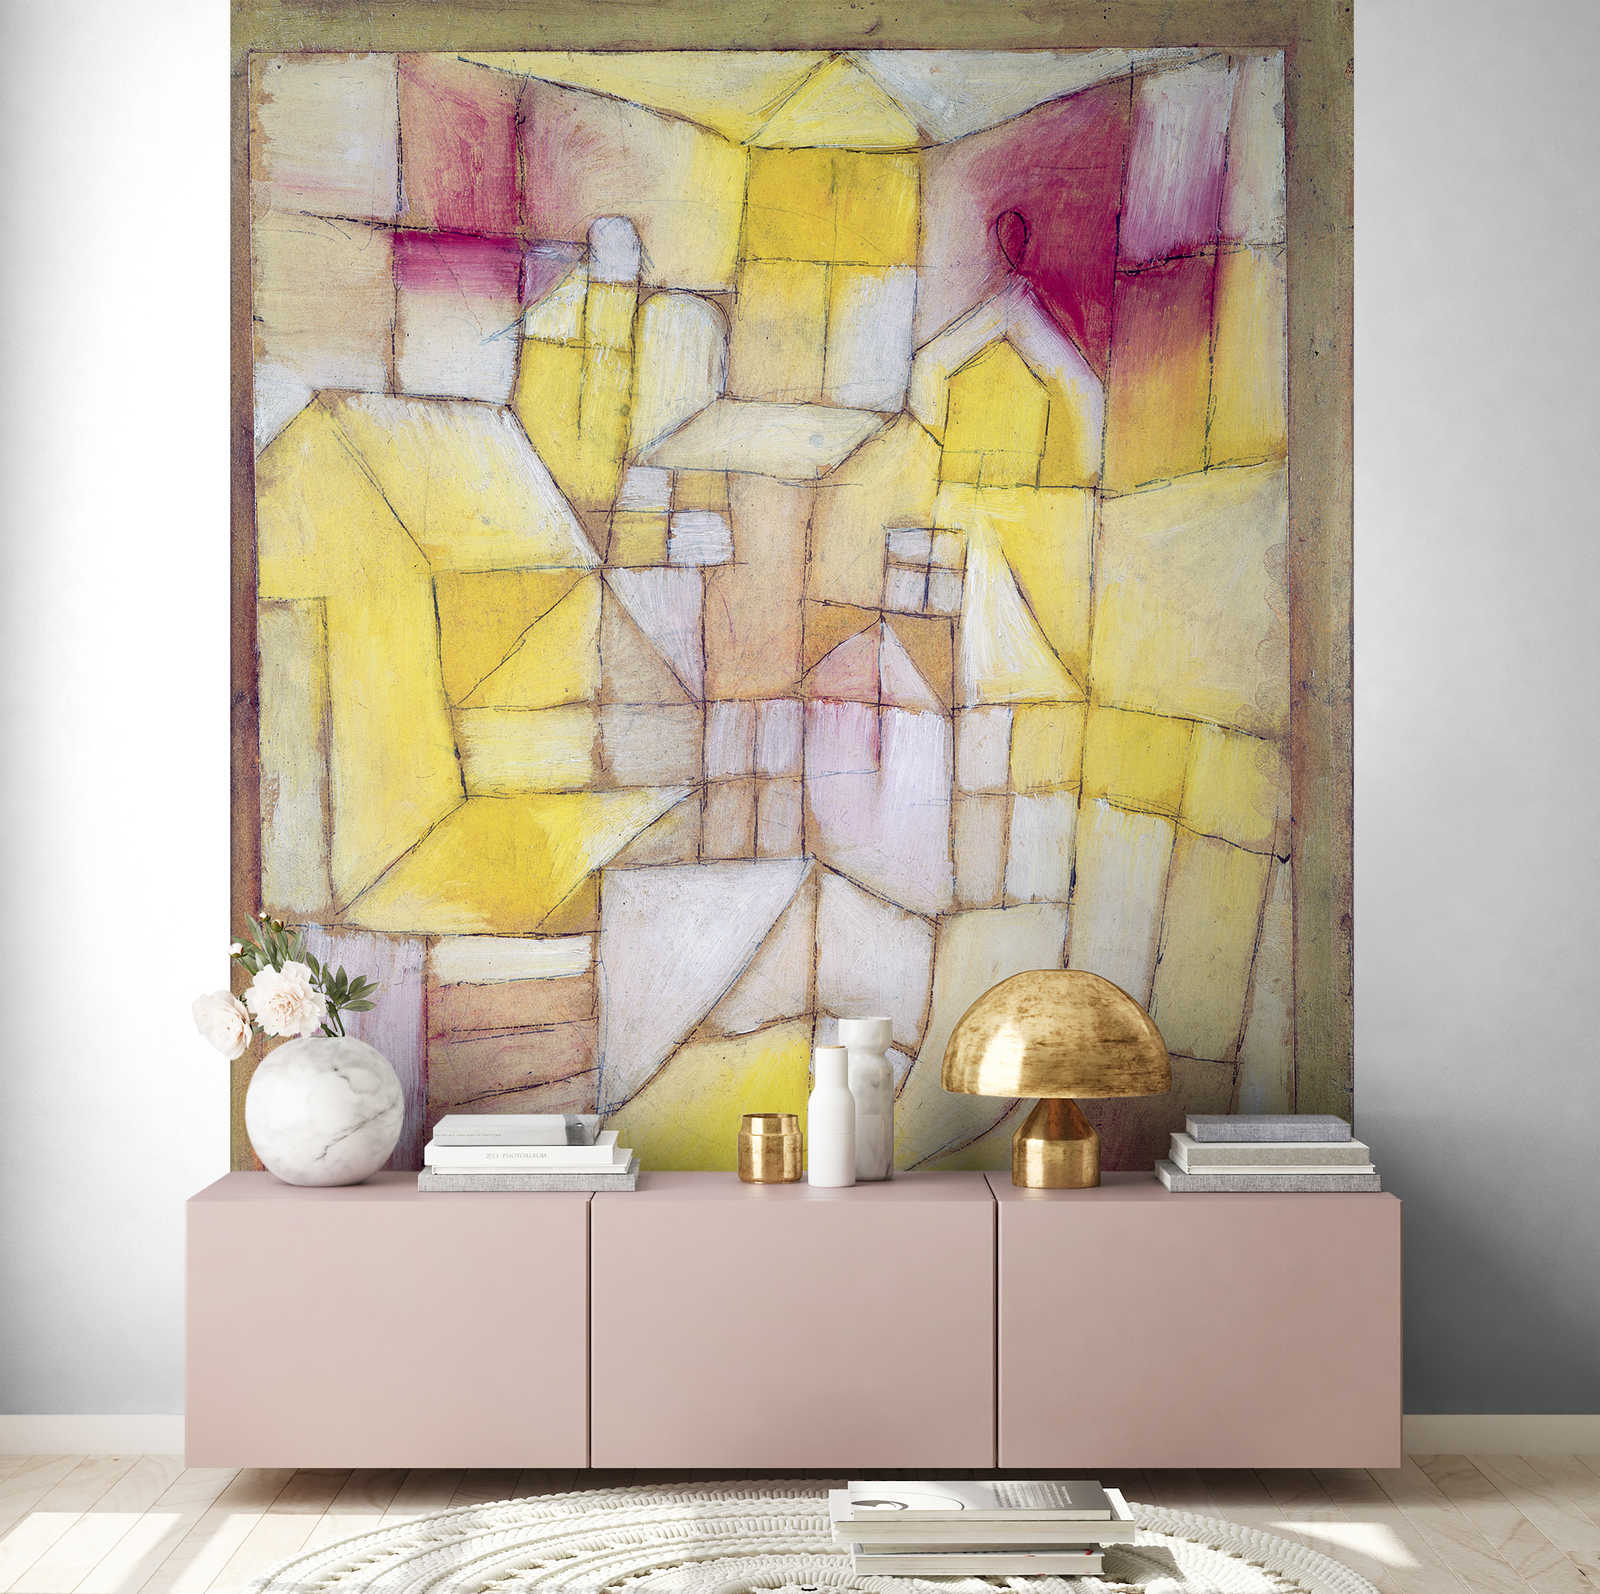             Rose-Jaune" muurschildering van Paul Klee
        